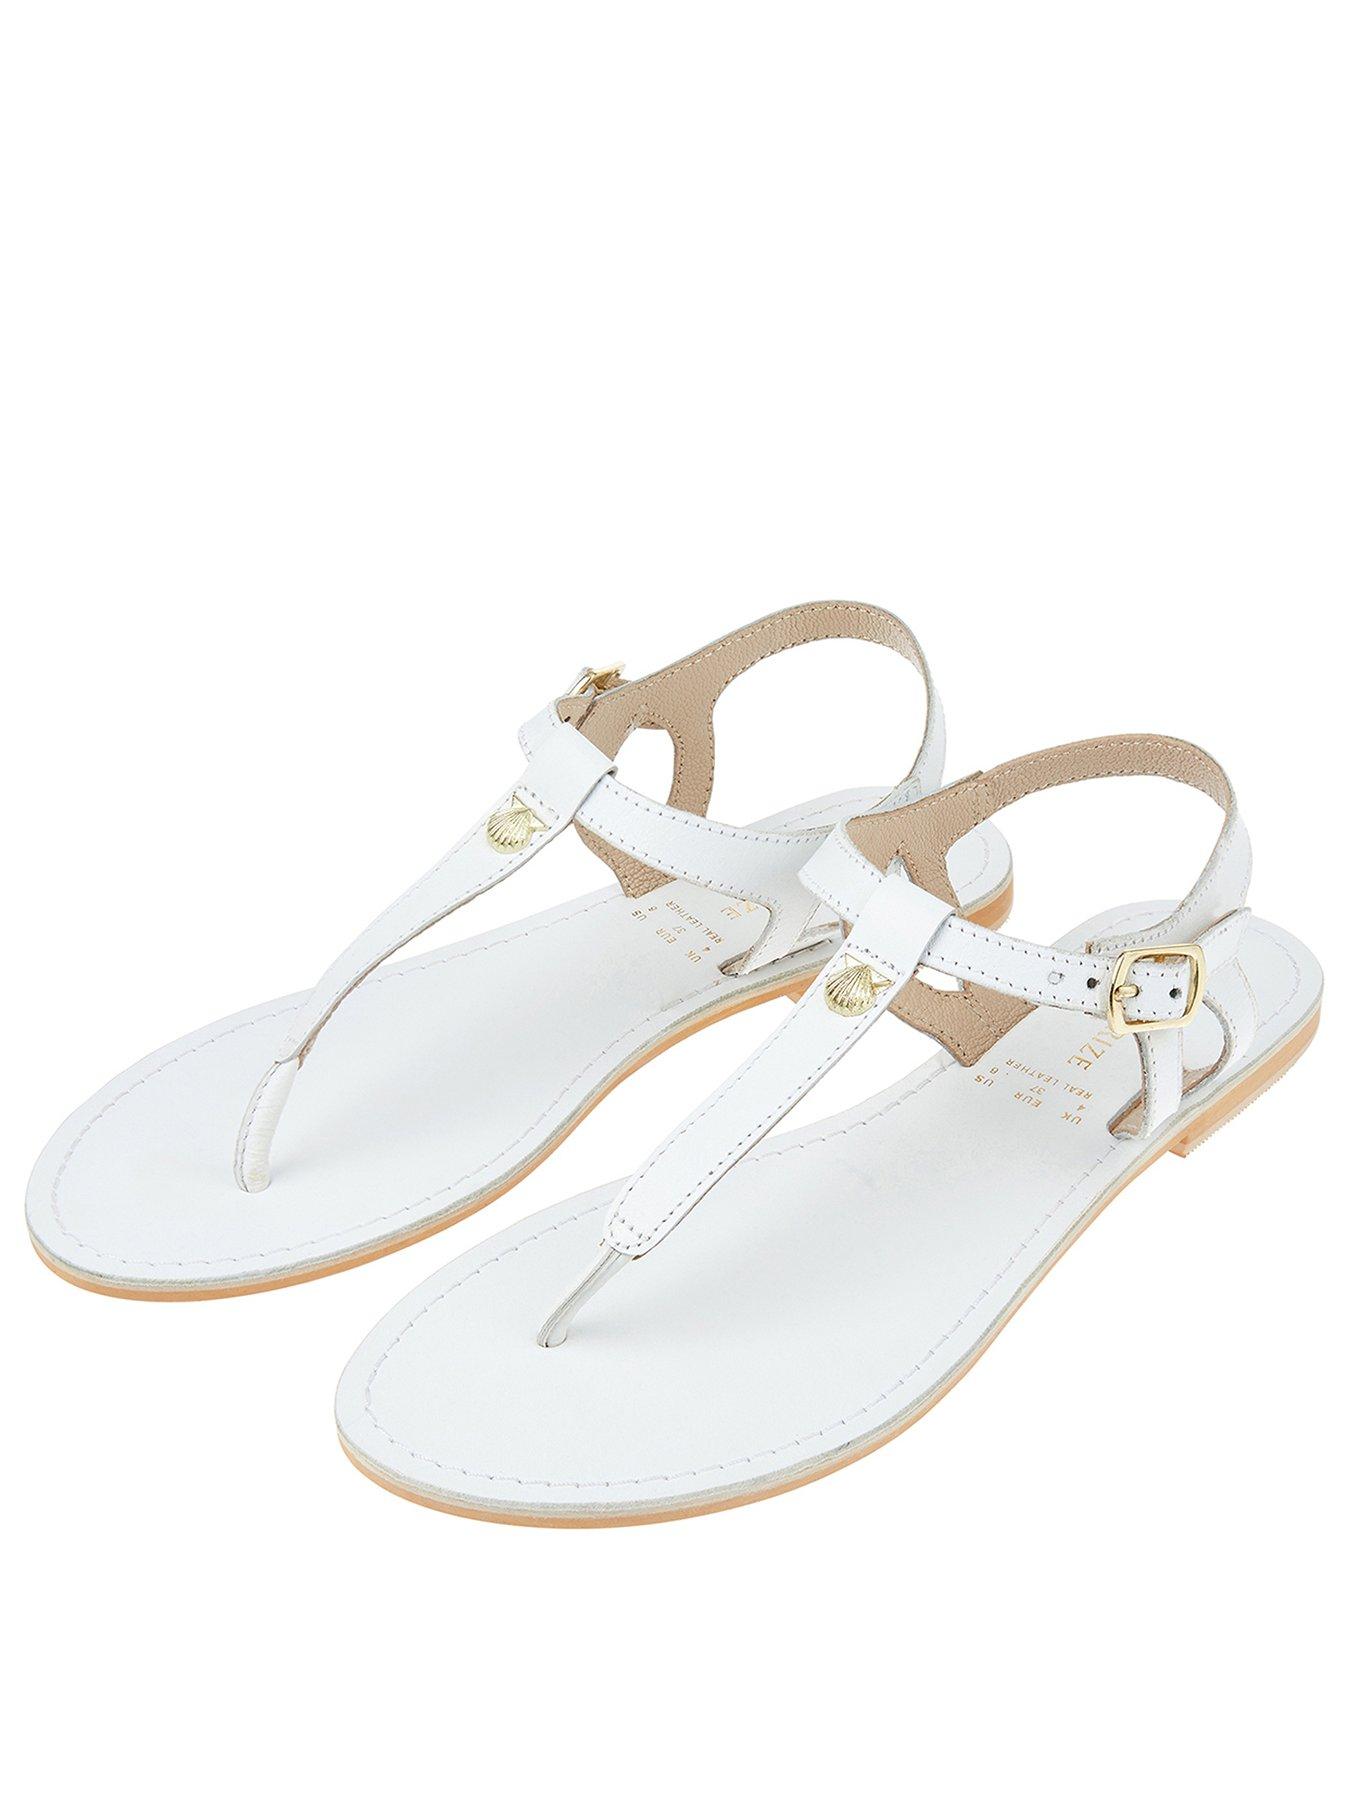 white sandals ireland